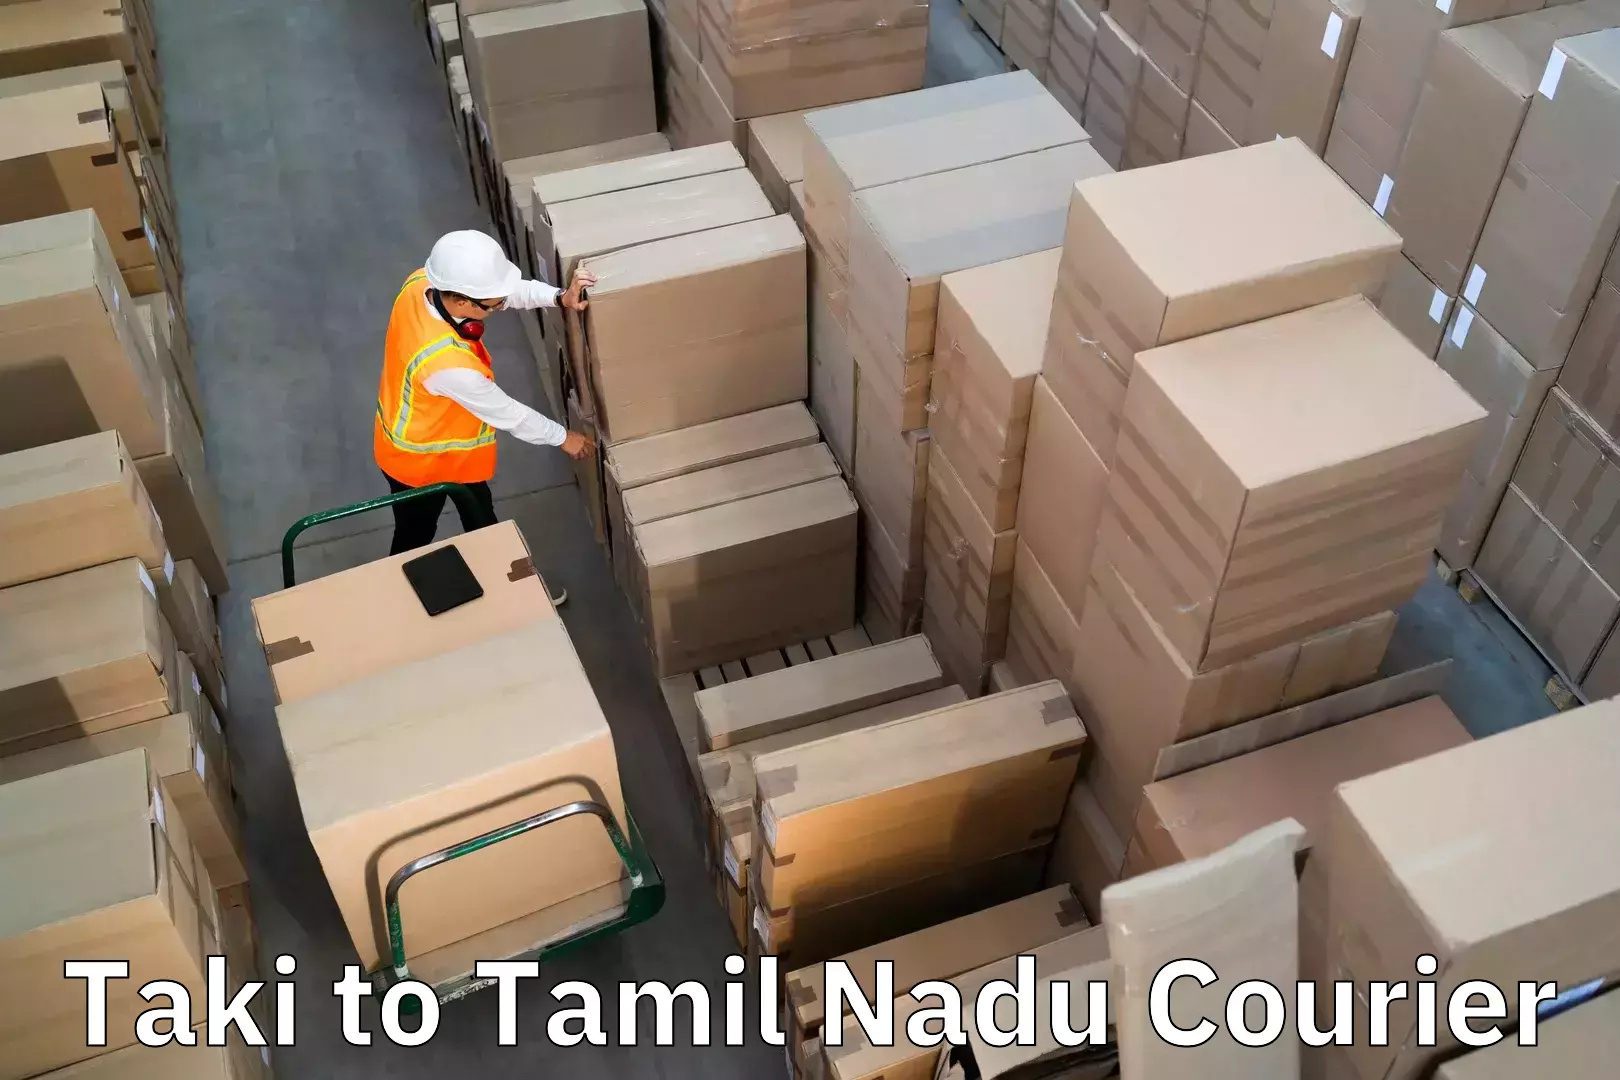 Luggage delivery app Taki to Thiruvadanai